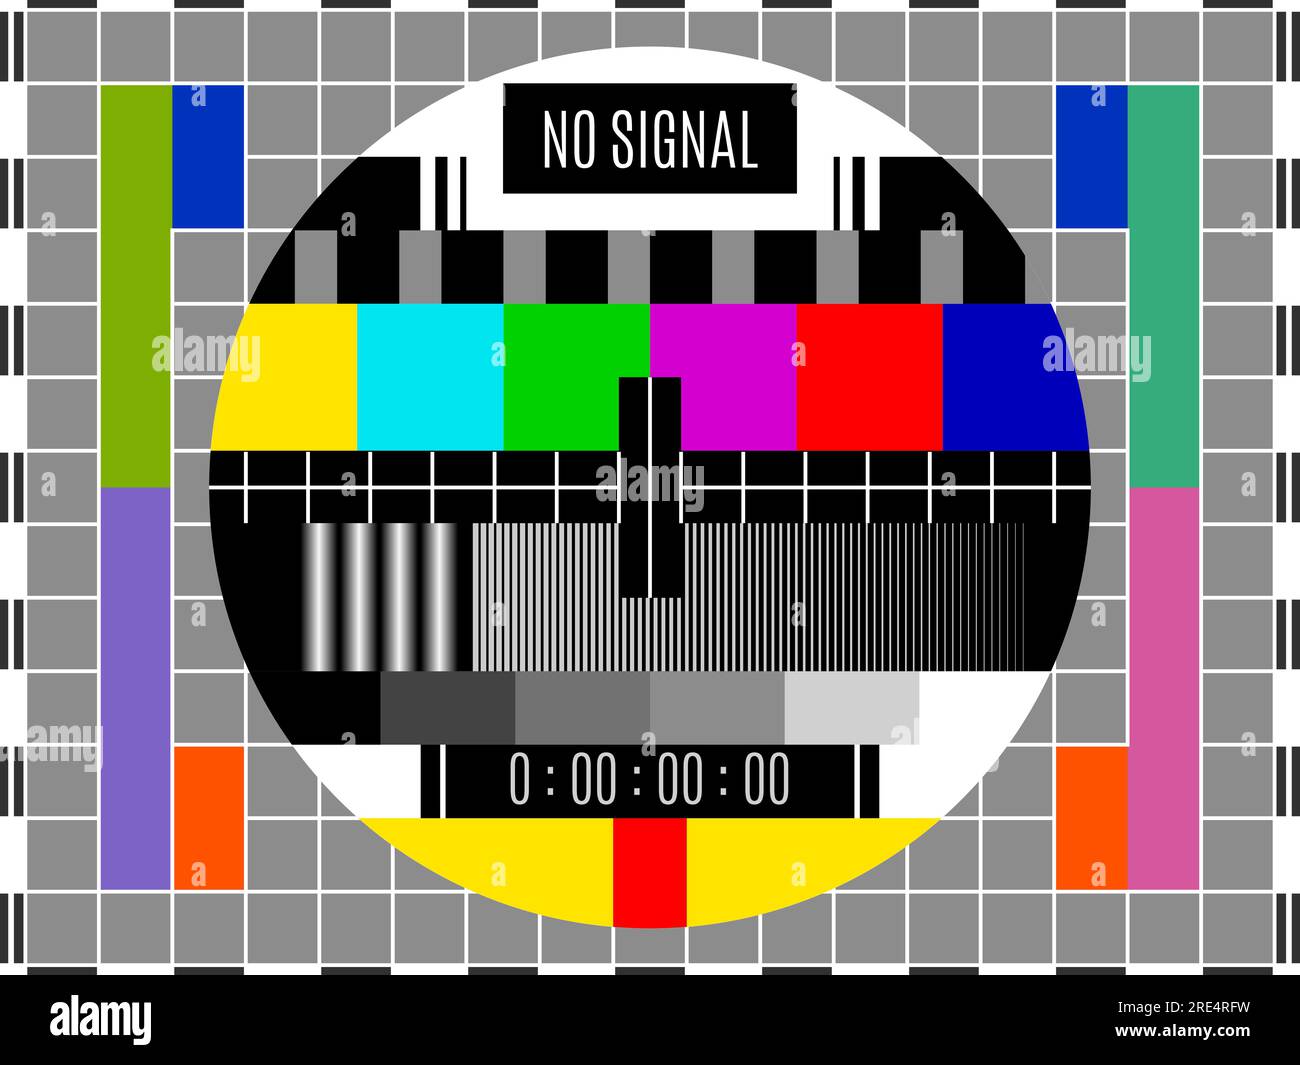 Vektormuster des Fernsehsignaltests. Retro-Testkarte für Fernsehsendungen mit farbigen und einfarbigen Balken in einem Kreis auf grauem Rasterhintergrund mit schwarzem weißem Rahmen. Alte TV-Technologien Stock Vektor